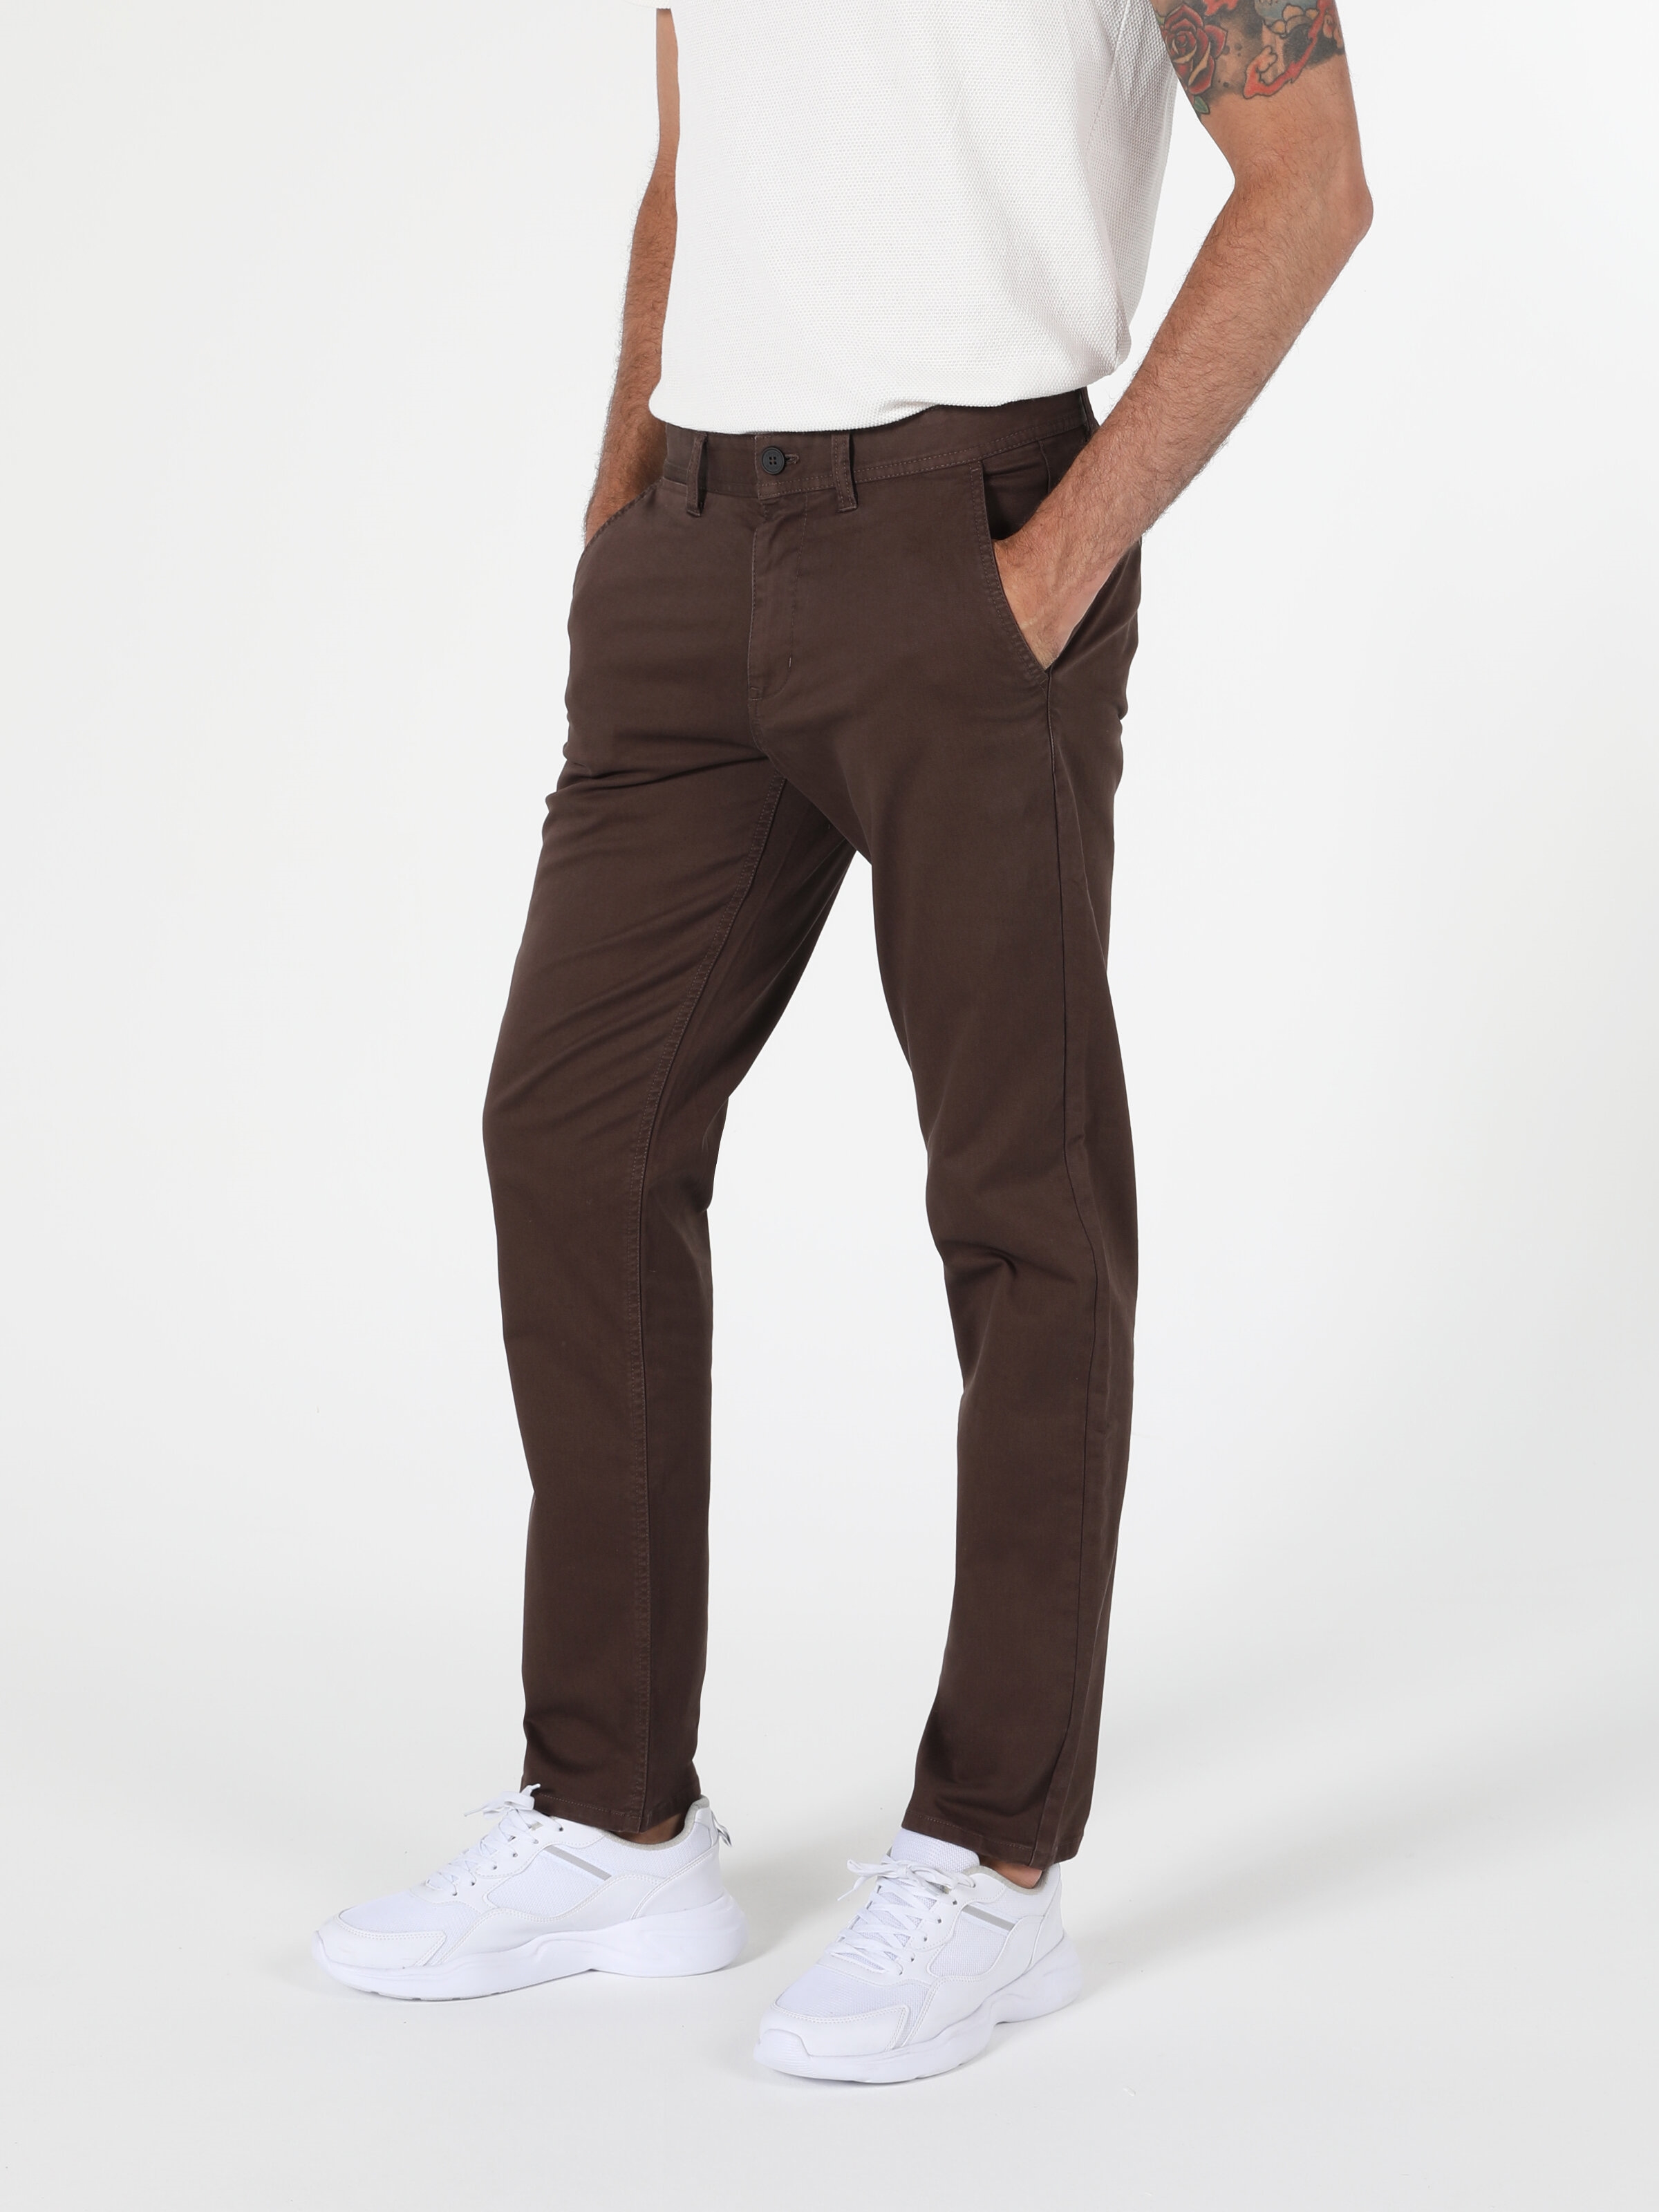 Afficher les détails de Pantalon Homme Marron Coupe Regular Taille Moyenne Coupe Normale Jambe Droite